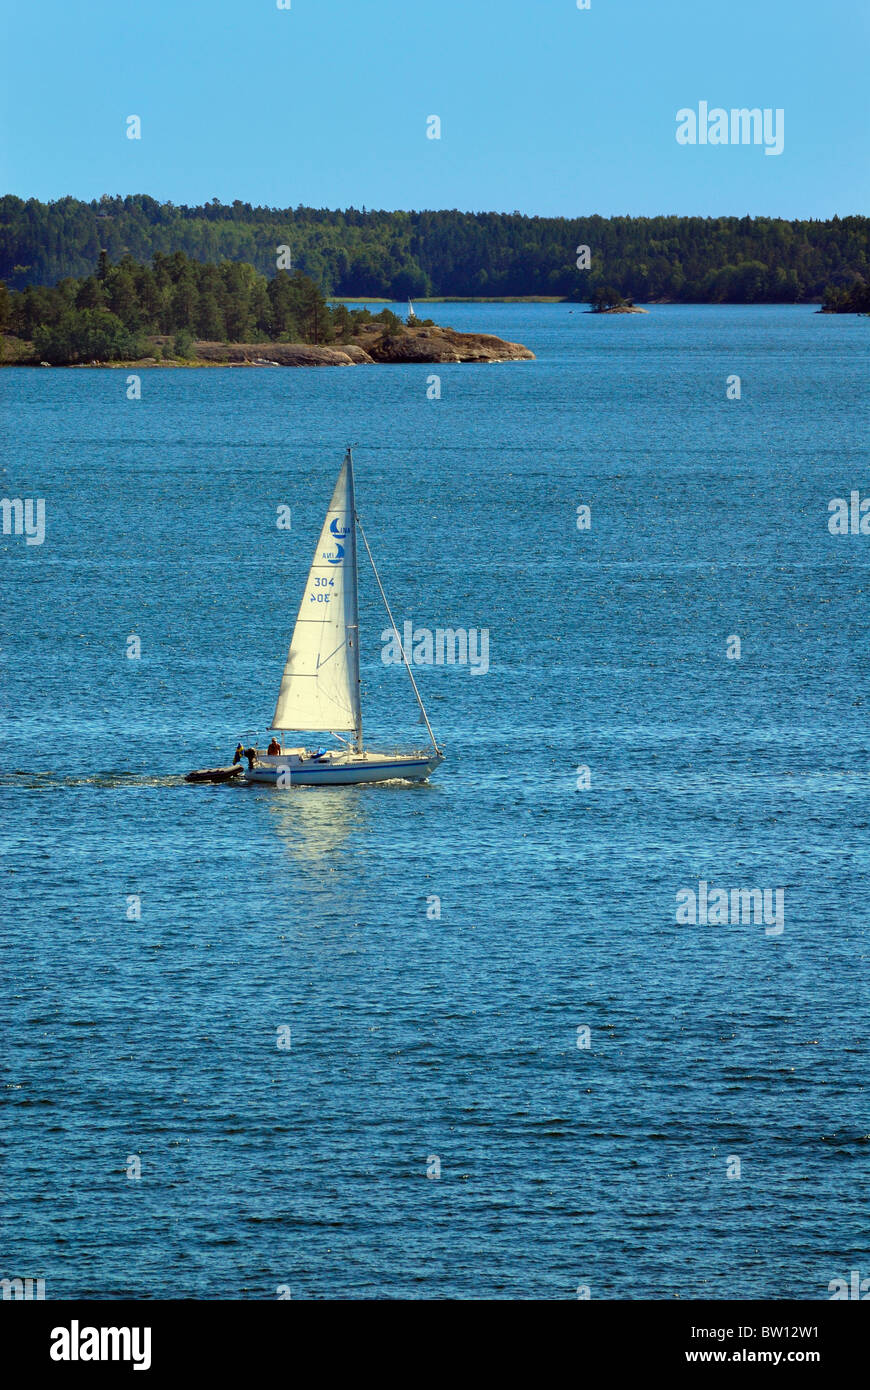 Segelboot auf dem Meer außerhalb von Stockholm, Schweden, Europa Stockfoto